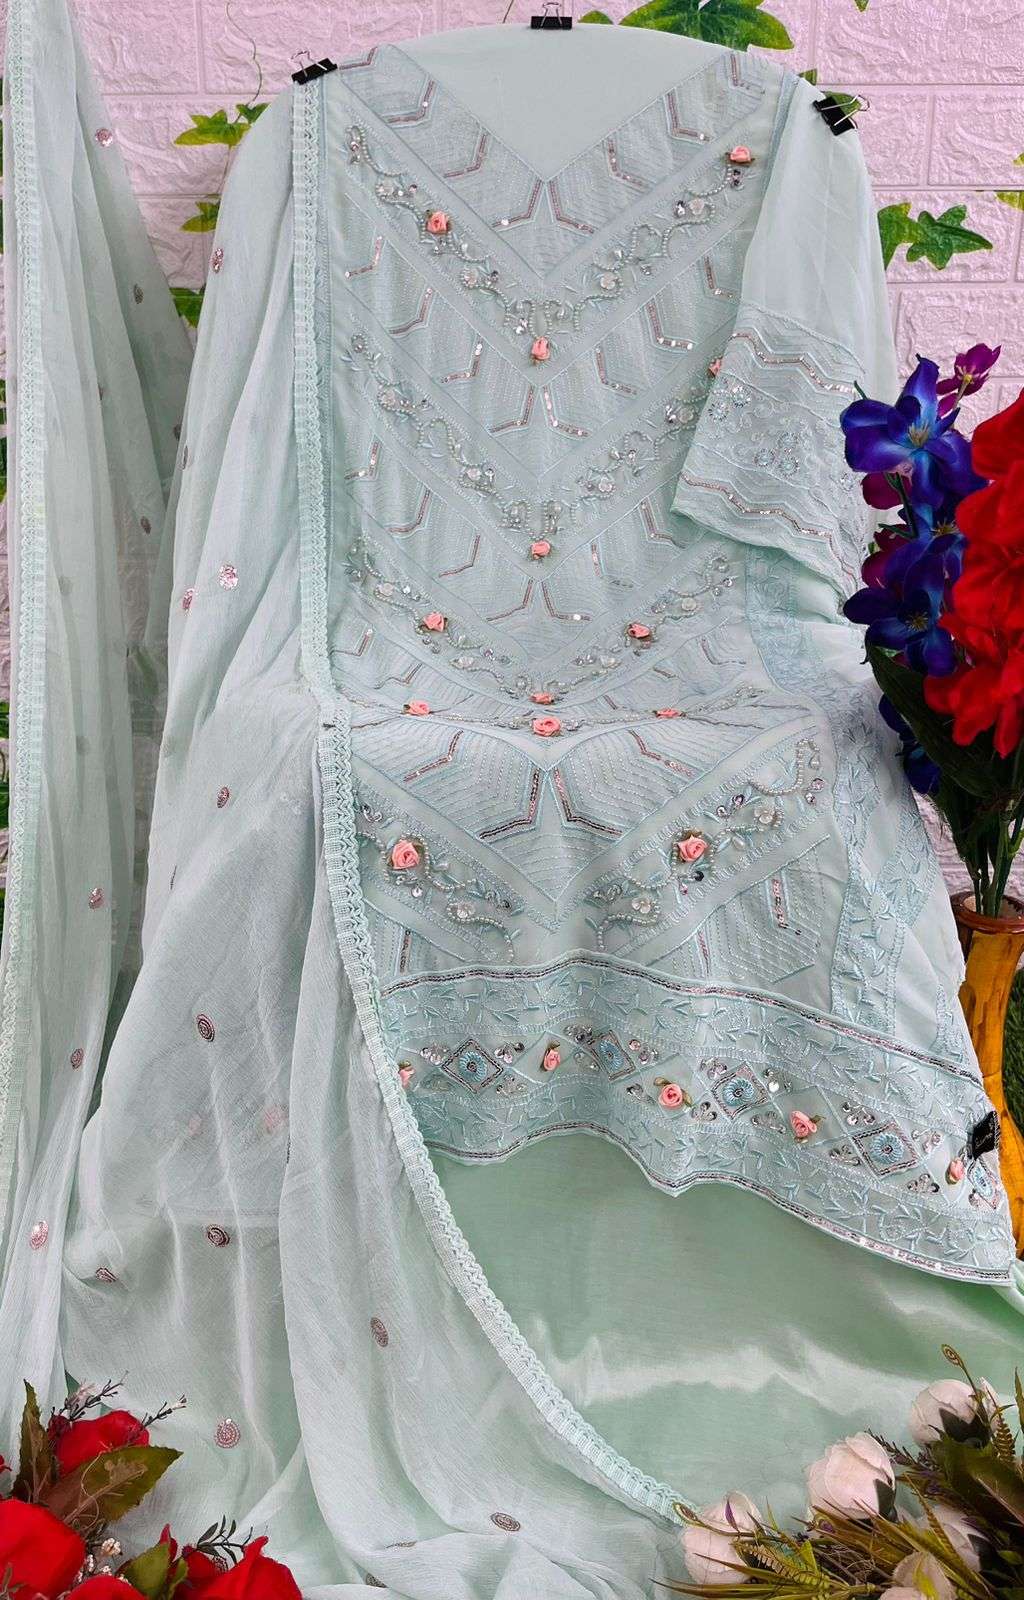 serine 143 new design stylish designer pakistani salwar suits online supplier surat 